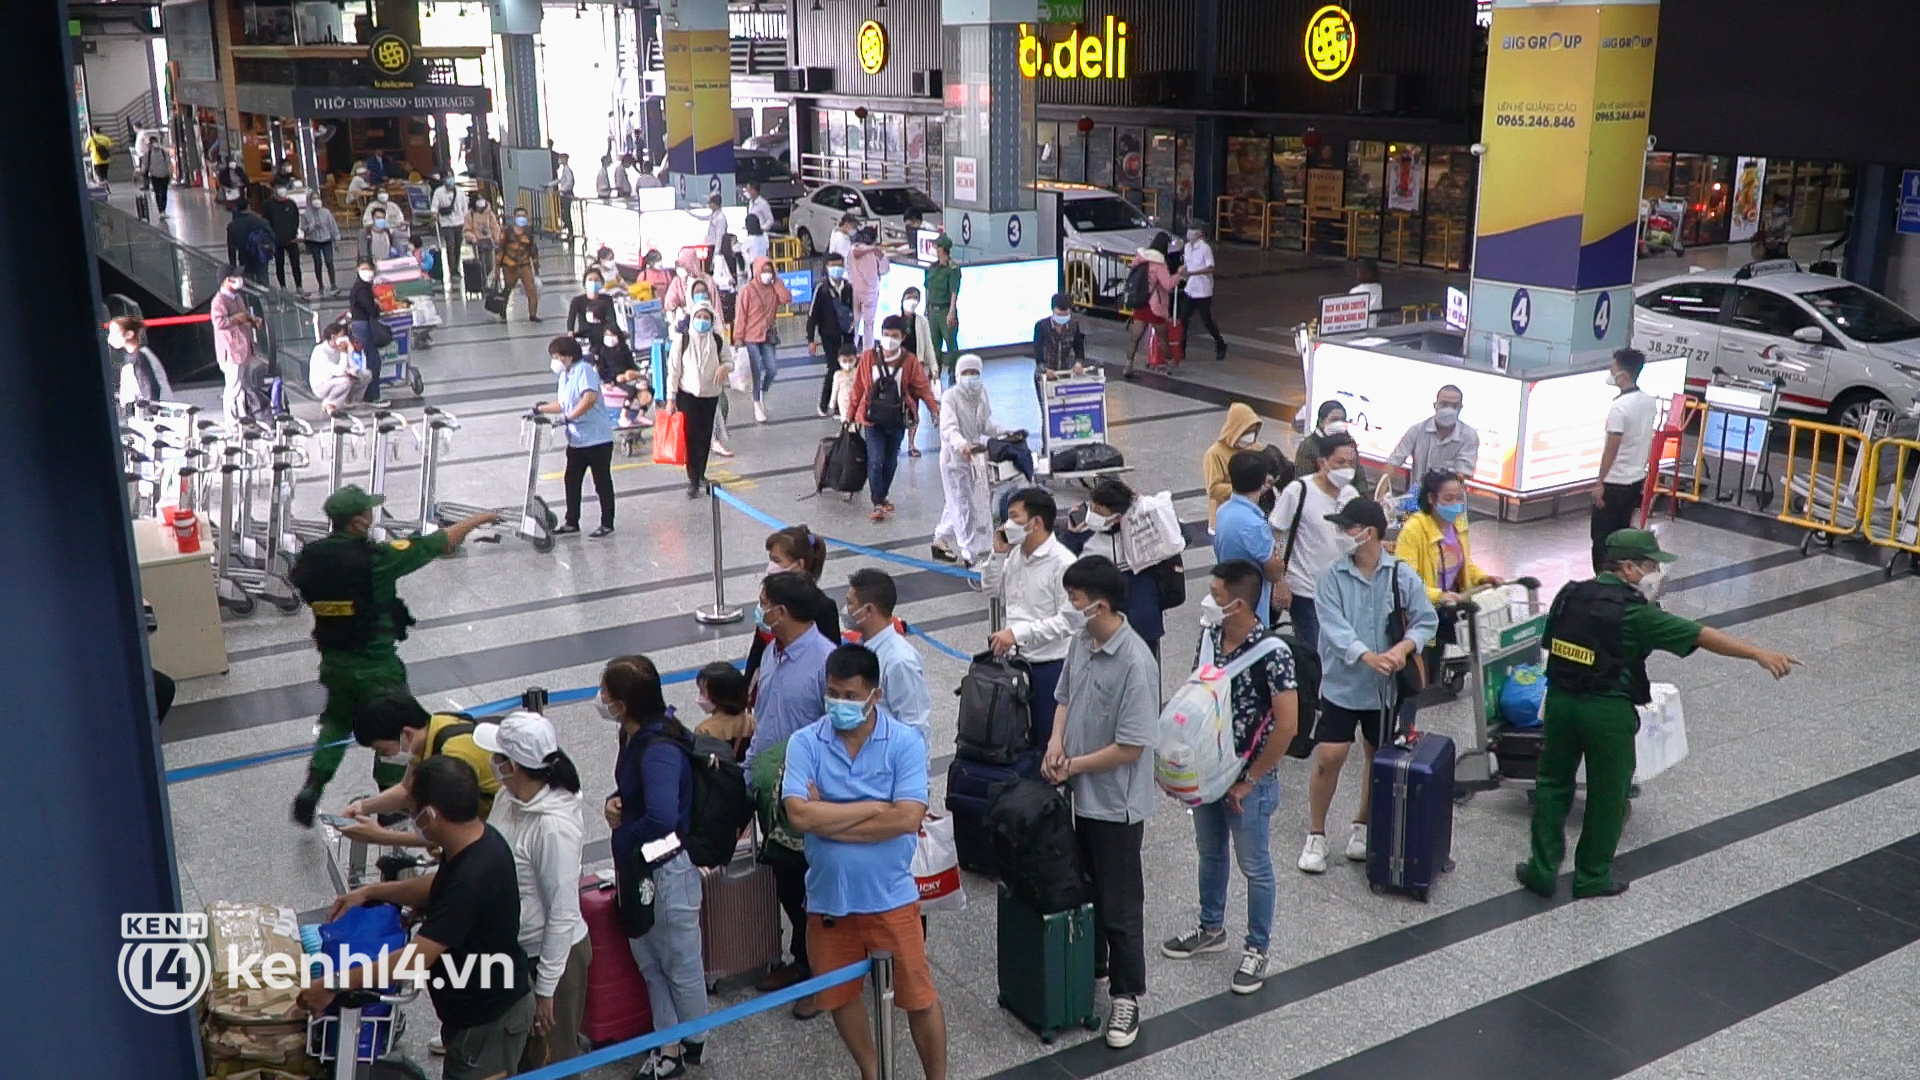 Ảnh, clip: Sân bay Tân Sơn Nhất đông nghẹt khách chiều mùng 7 Tết, nhiều người chờ hàng giờ để đón taxi - Ảnh 2.